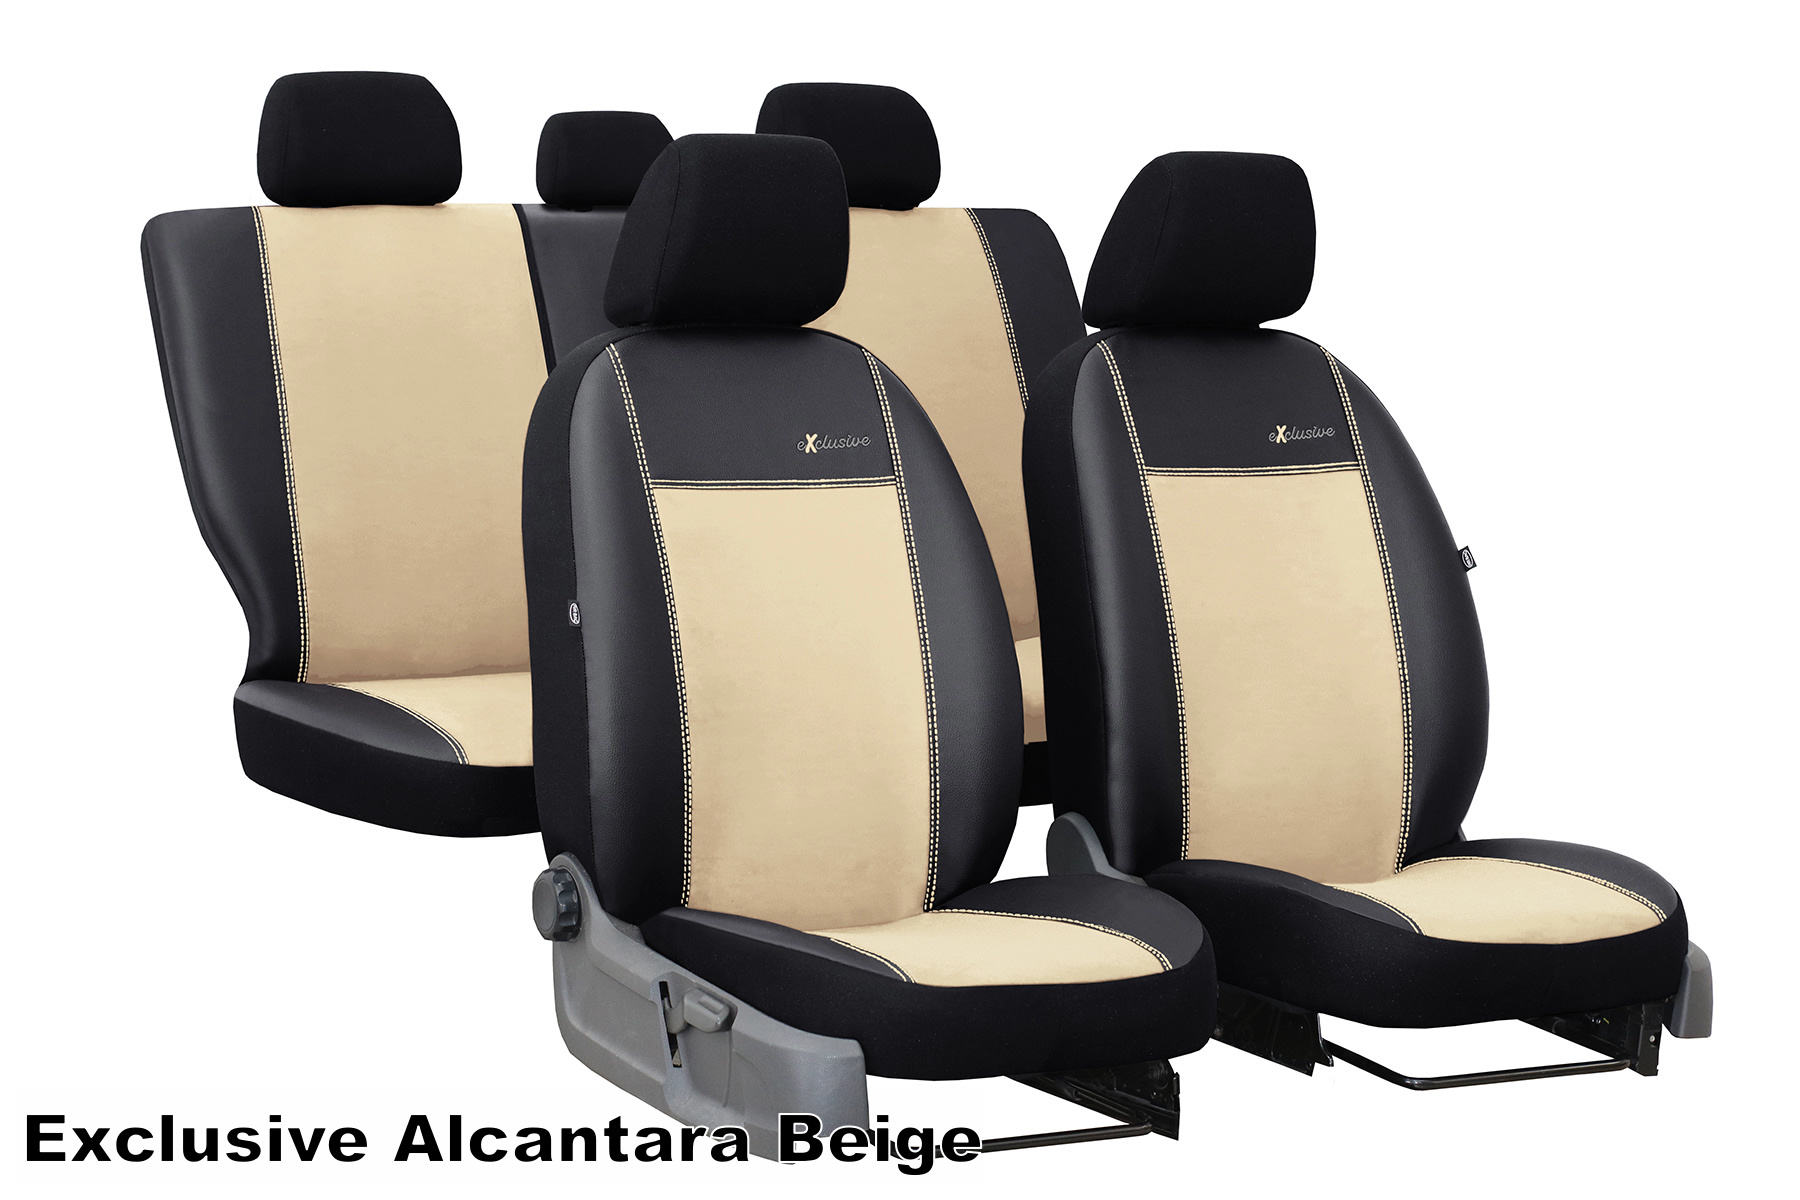 Maßgefertigter Sitzbezug Exclusive für VW Caddy - Maluch Premium Autozubehör